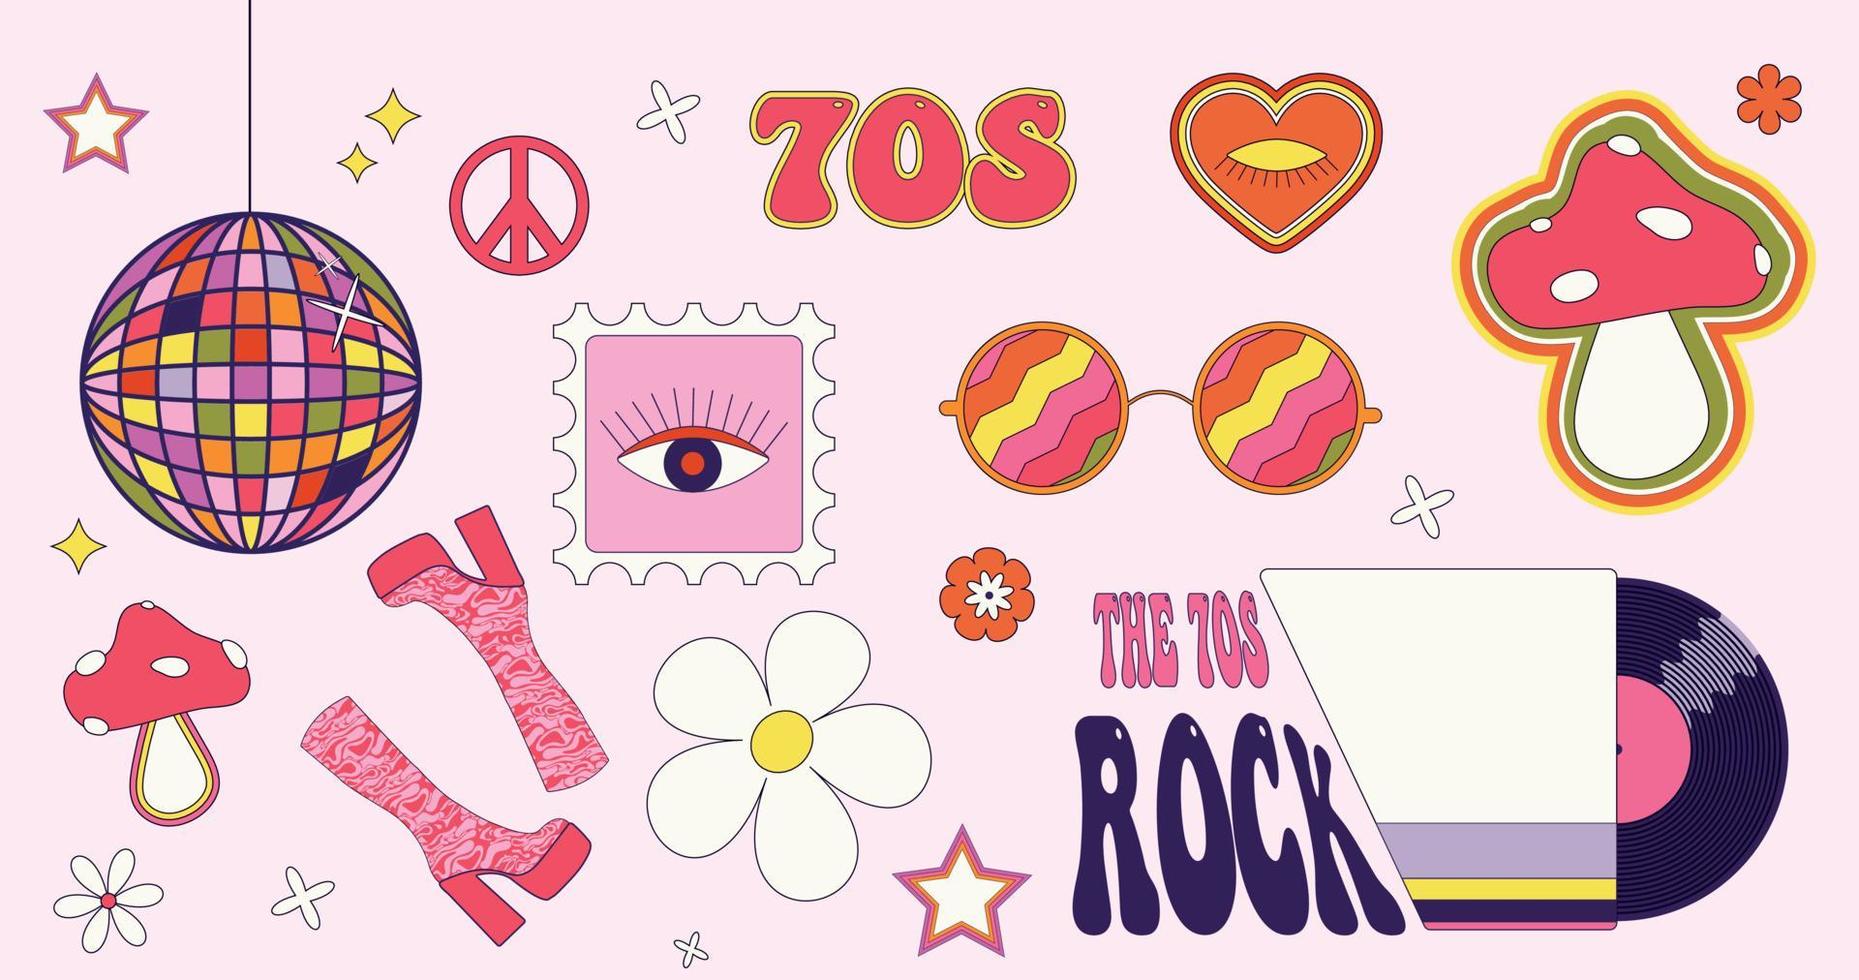 ensemble d'autocollants vectoriels groovy des années 70. boule disco, bottes hautes, signe de paix, champignons, hippies, disque vinyle et lunettes rondes. vecteur